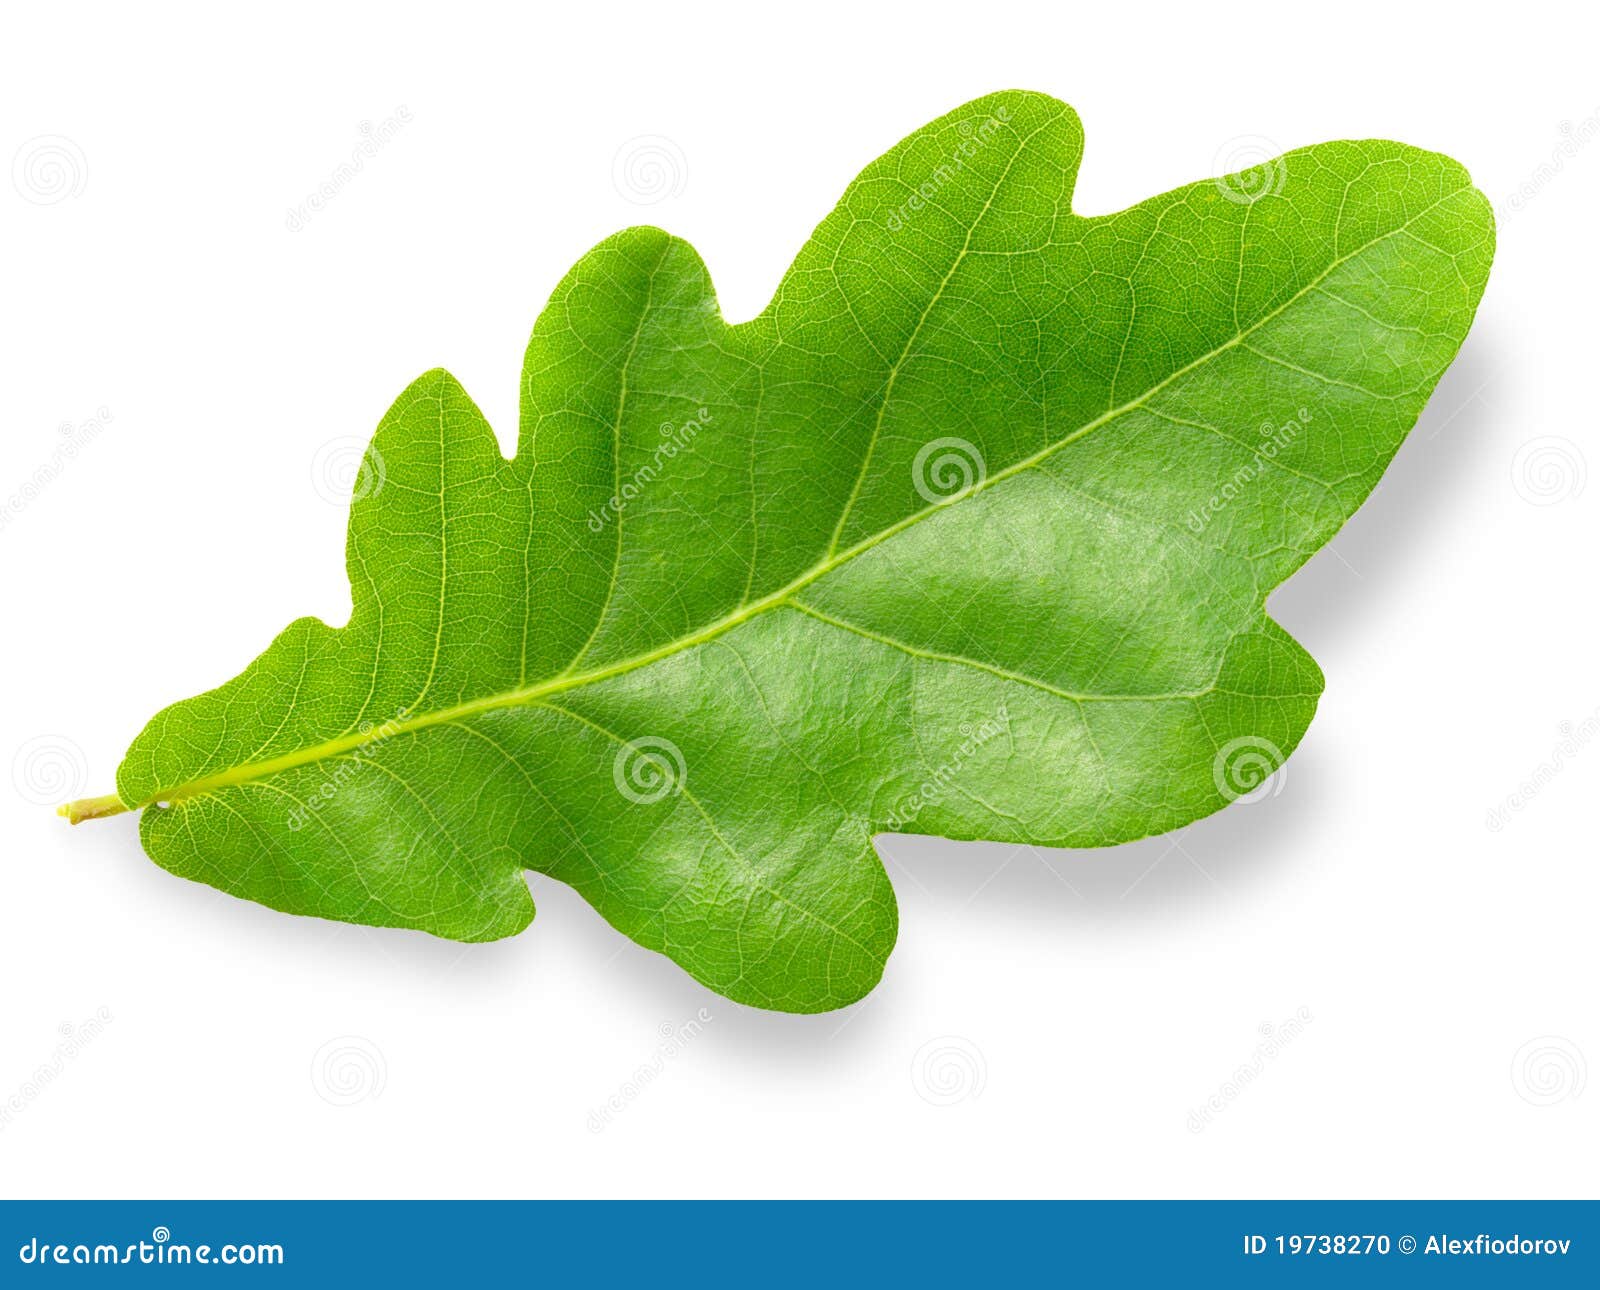 oak leaf.